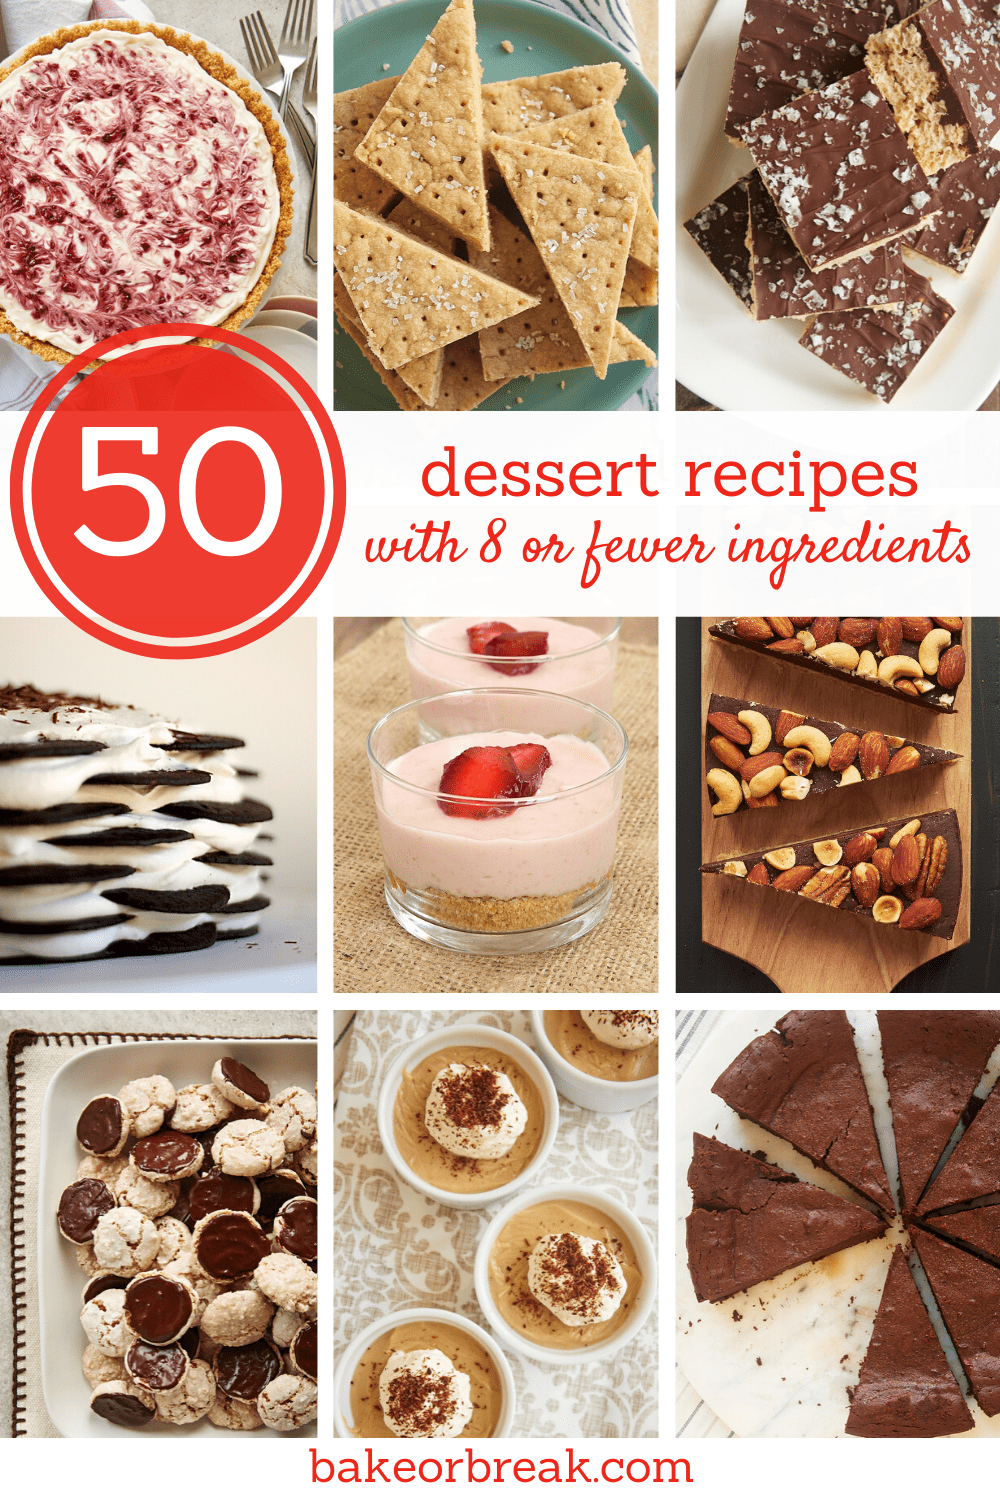 50 recettes de desserts avec 8 ou moins d'ingrédients bakeorbreak.com